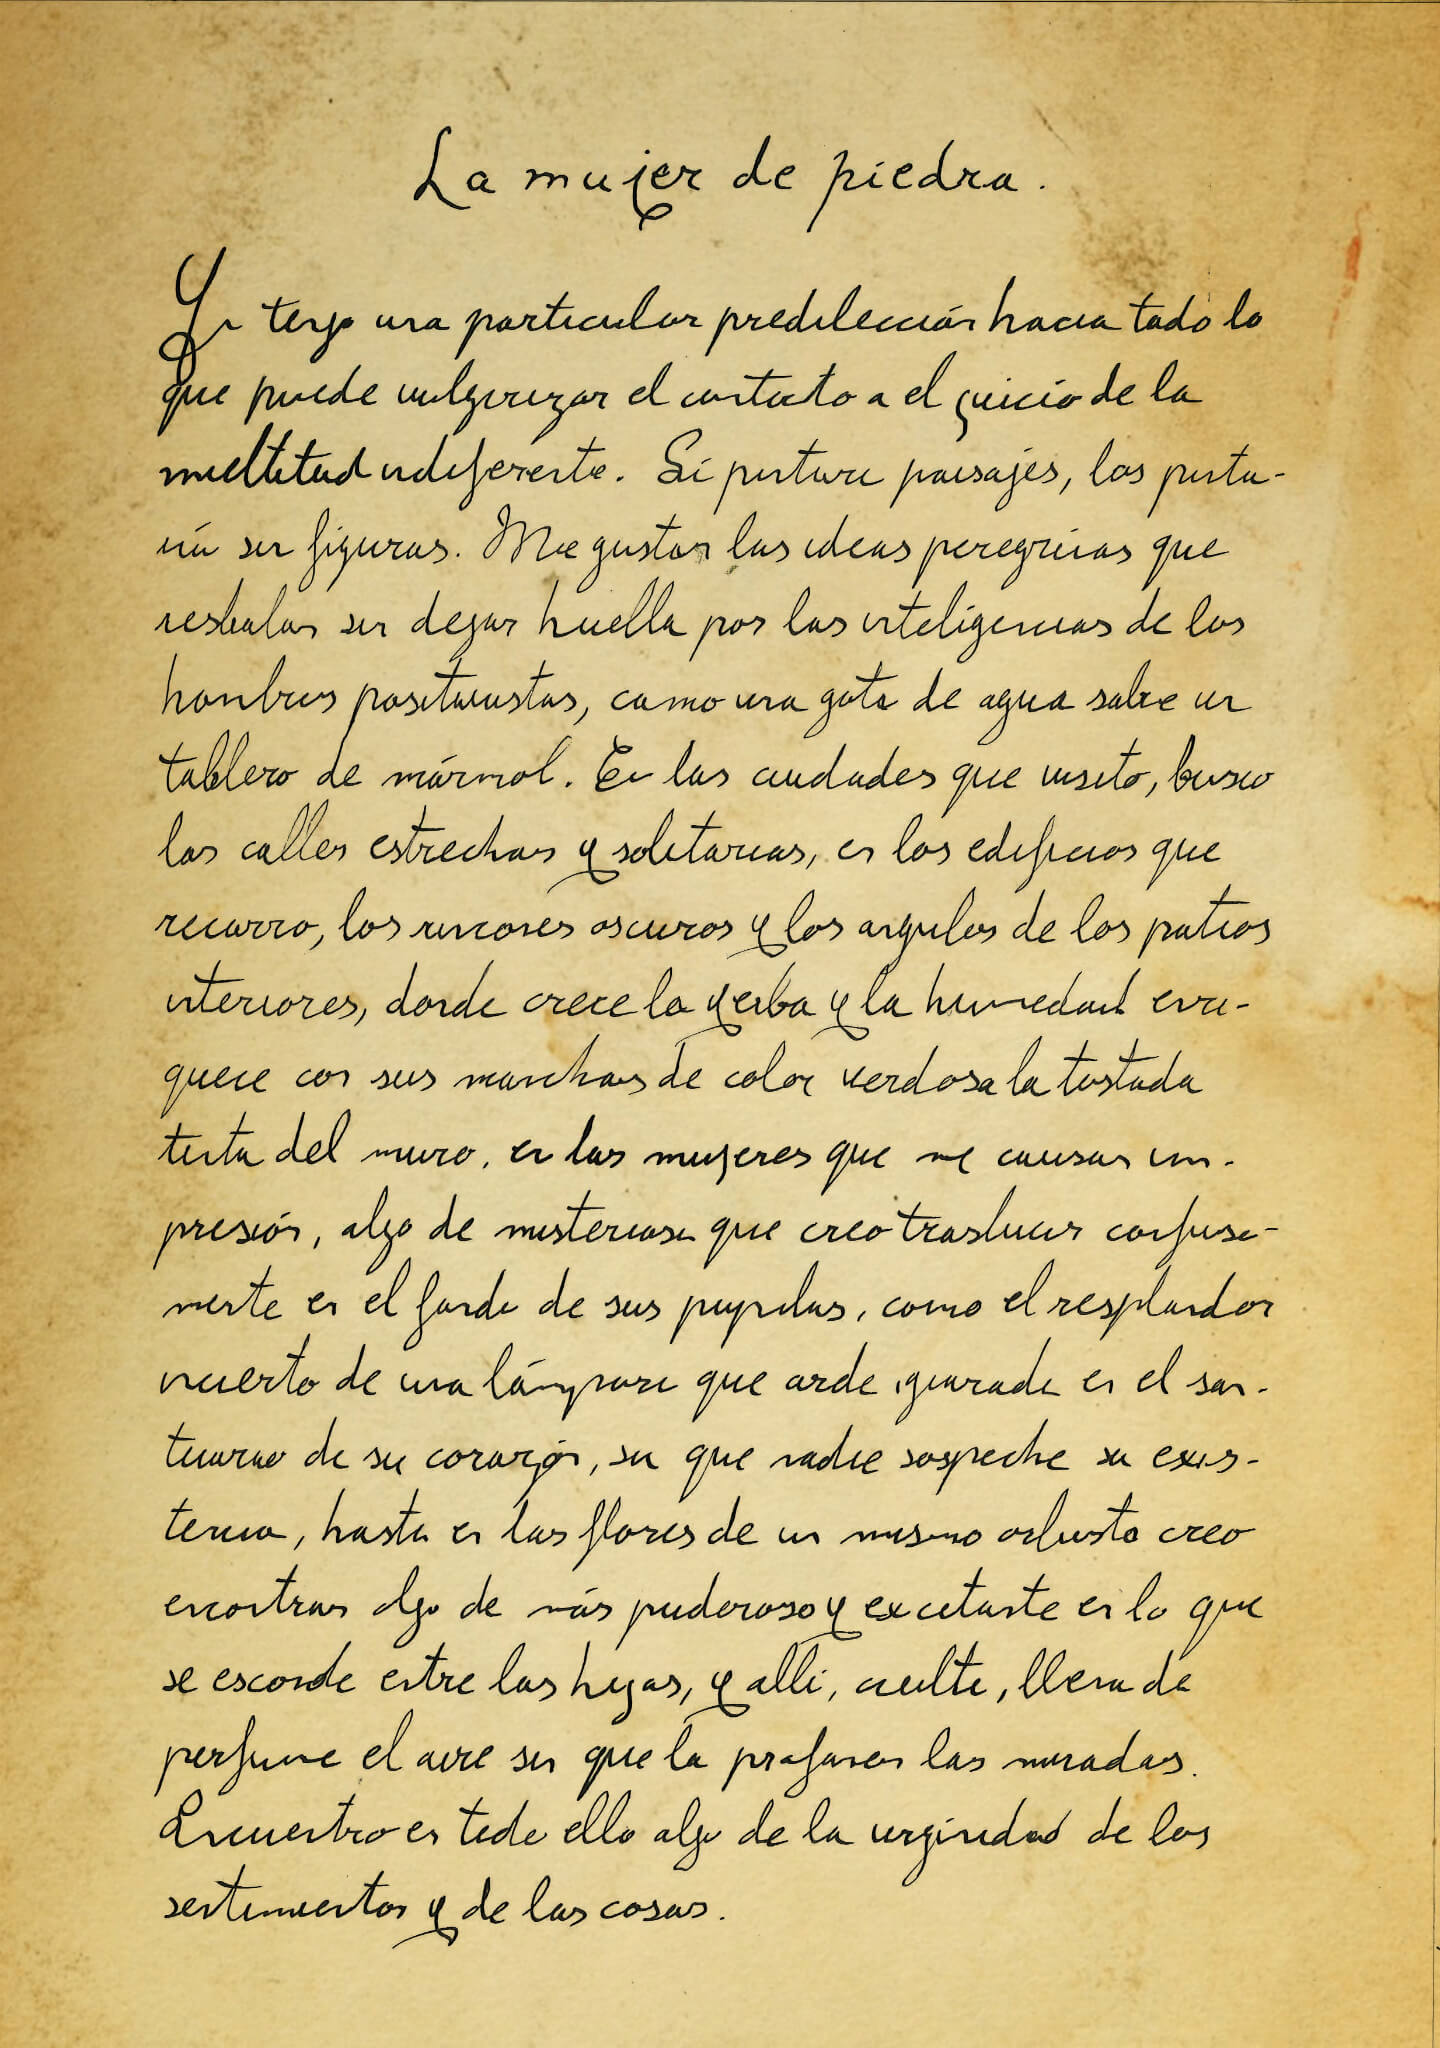 'La mujer de piedra', la décima carta de Gustavo Adolfo Bécquer